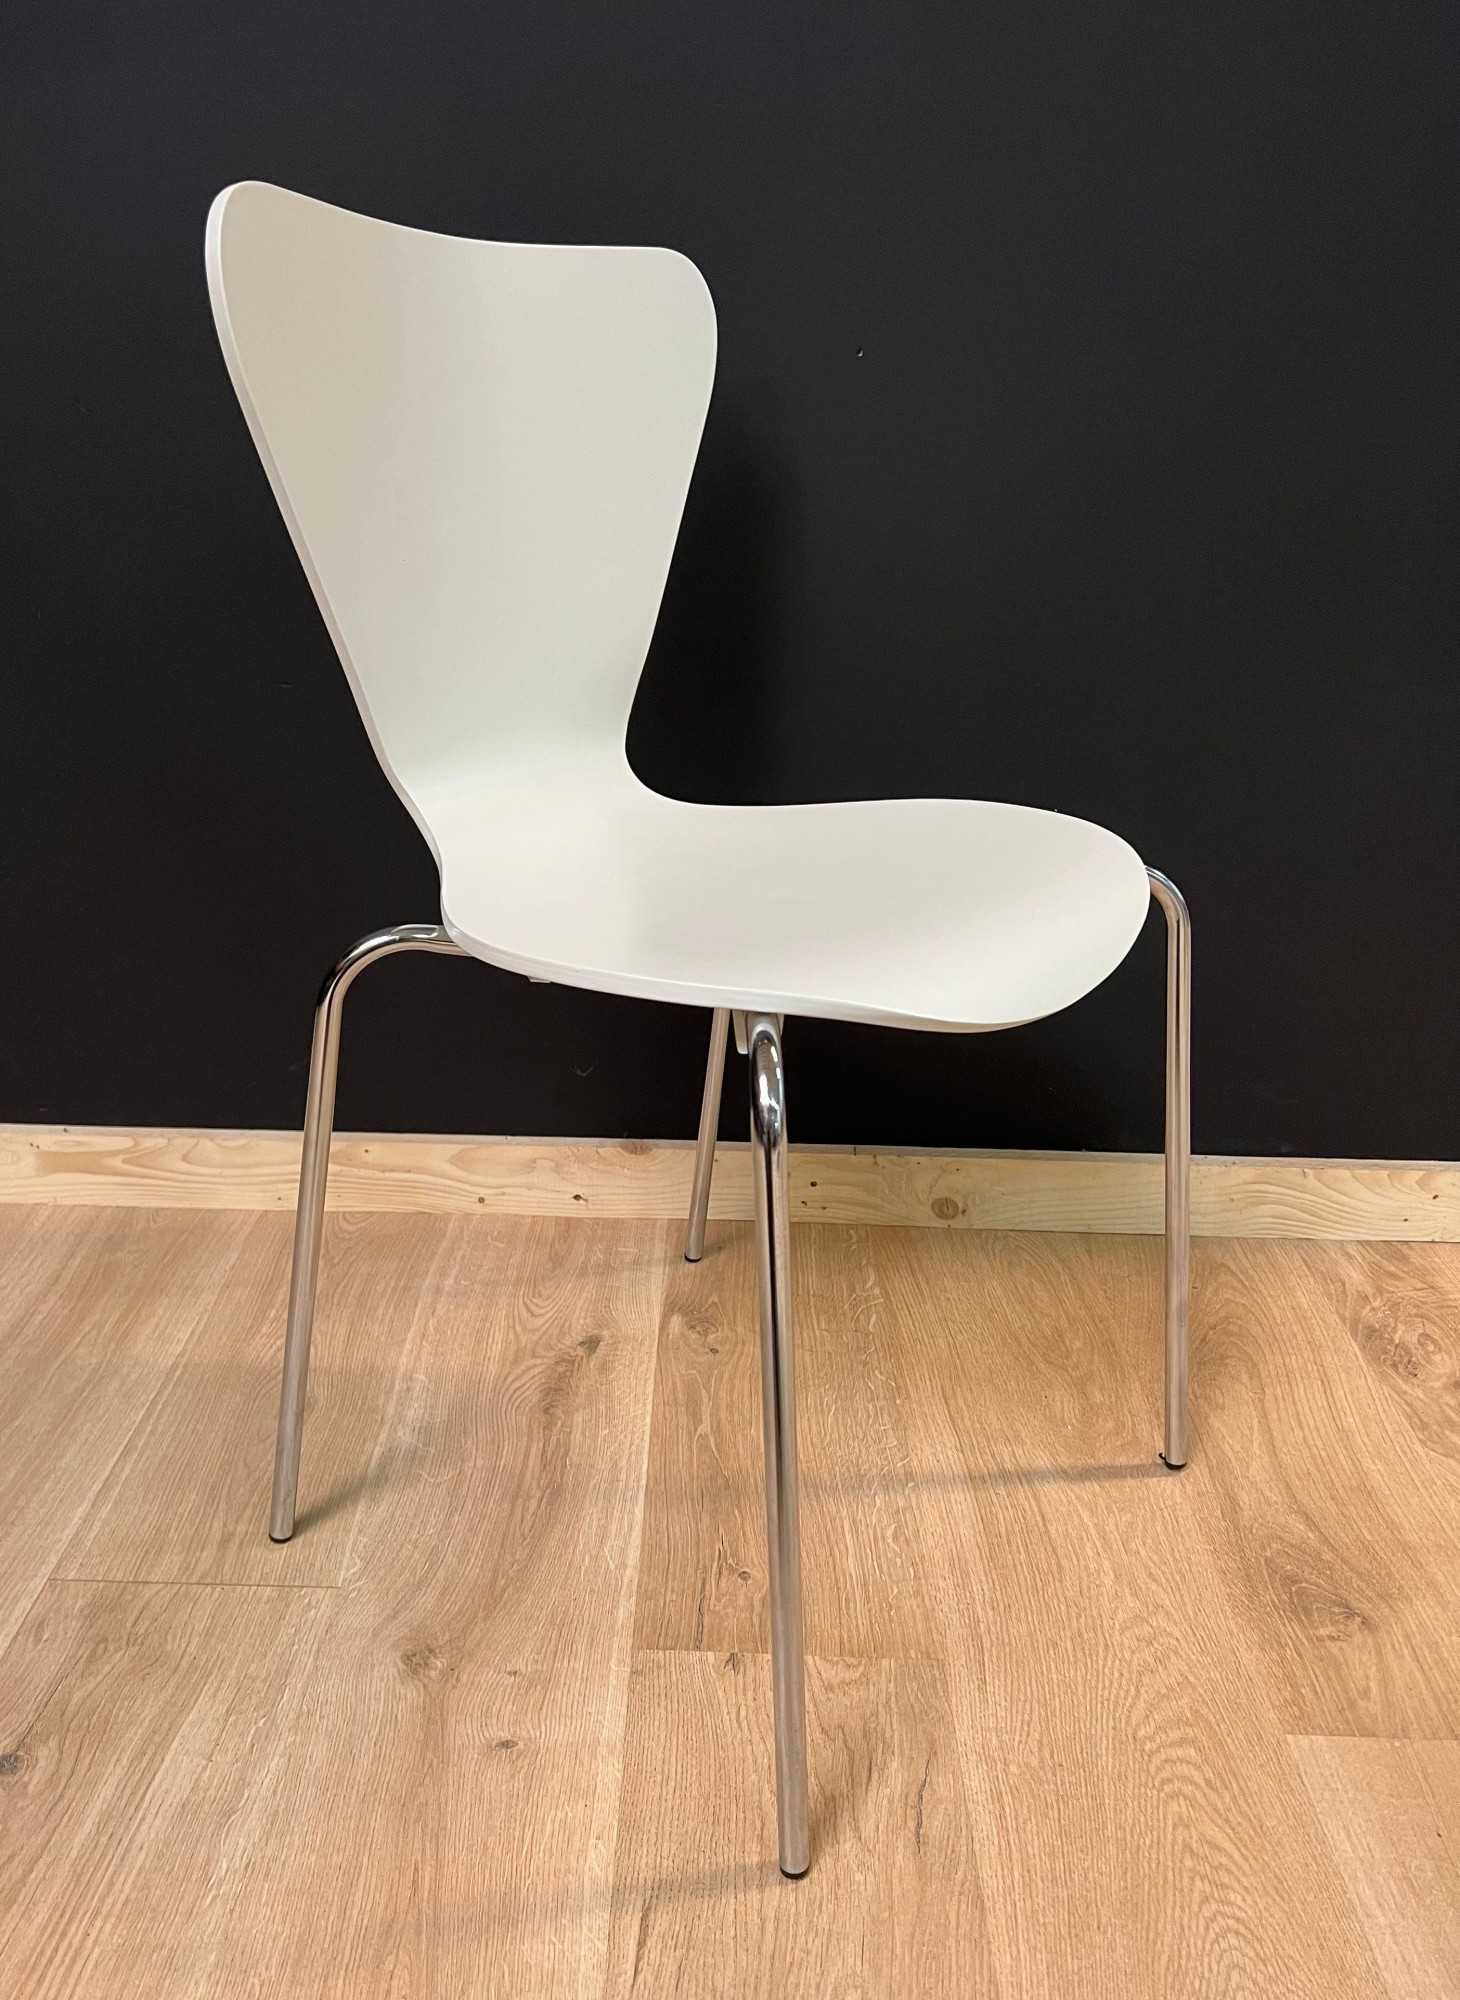 Krzesło do kuchni, jadalni drewniane sklejka chrom nóżki IVO